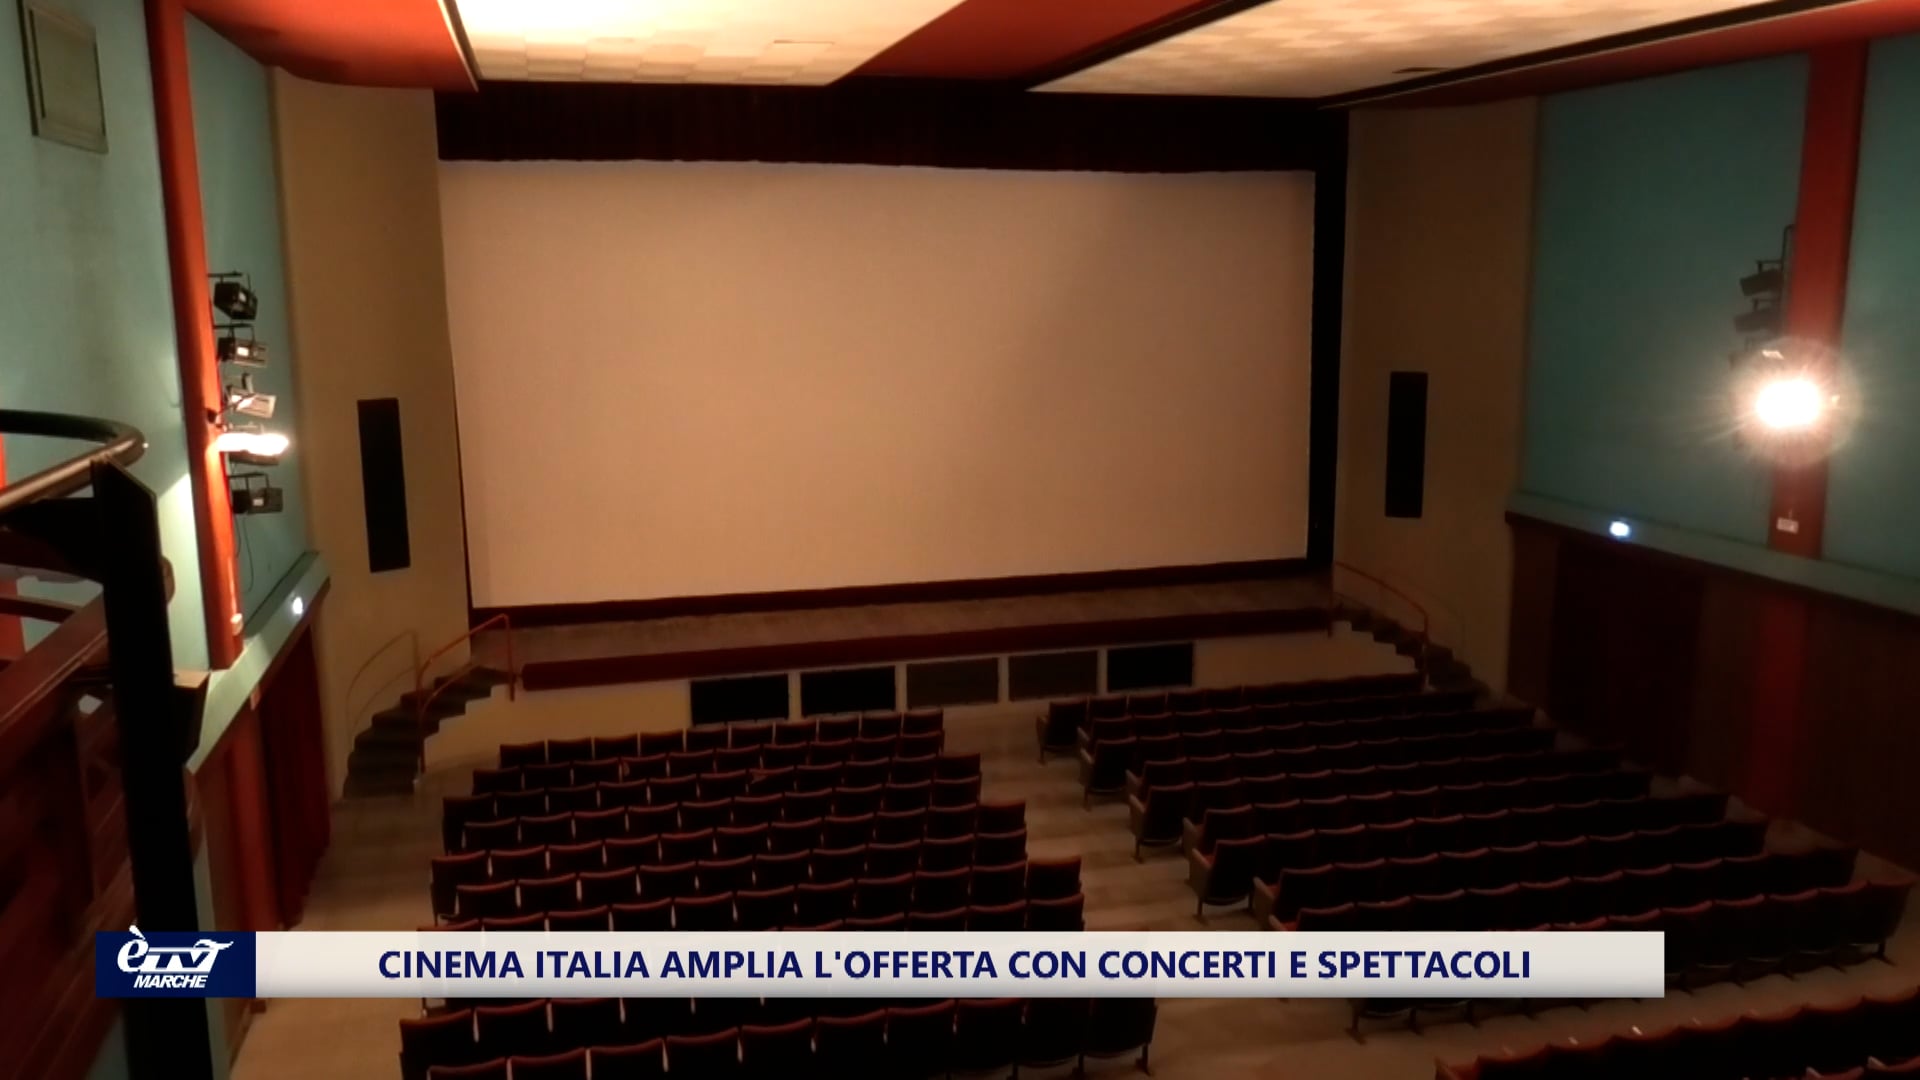 Cinema Italia punta a concerti e spettacoli